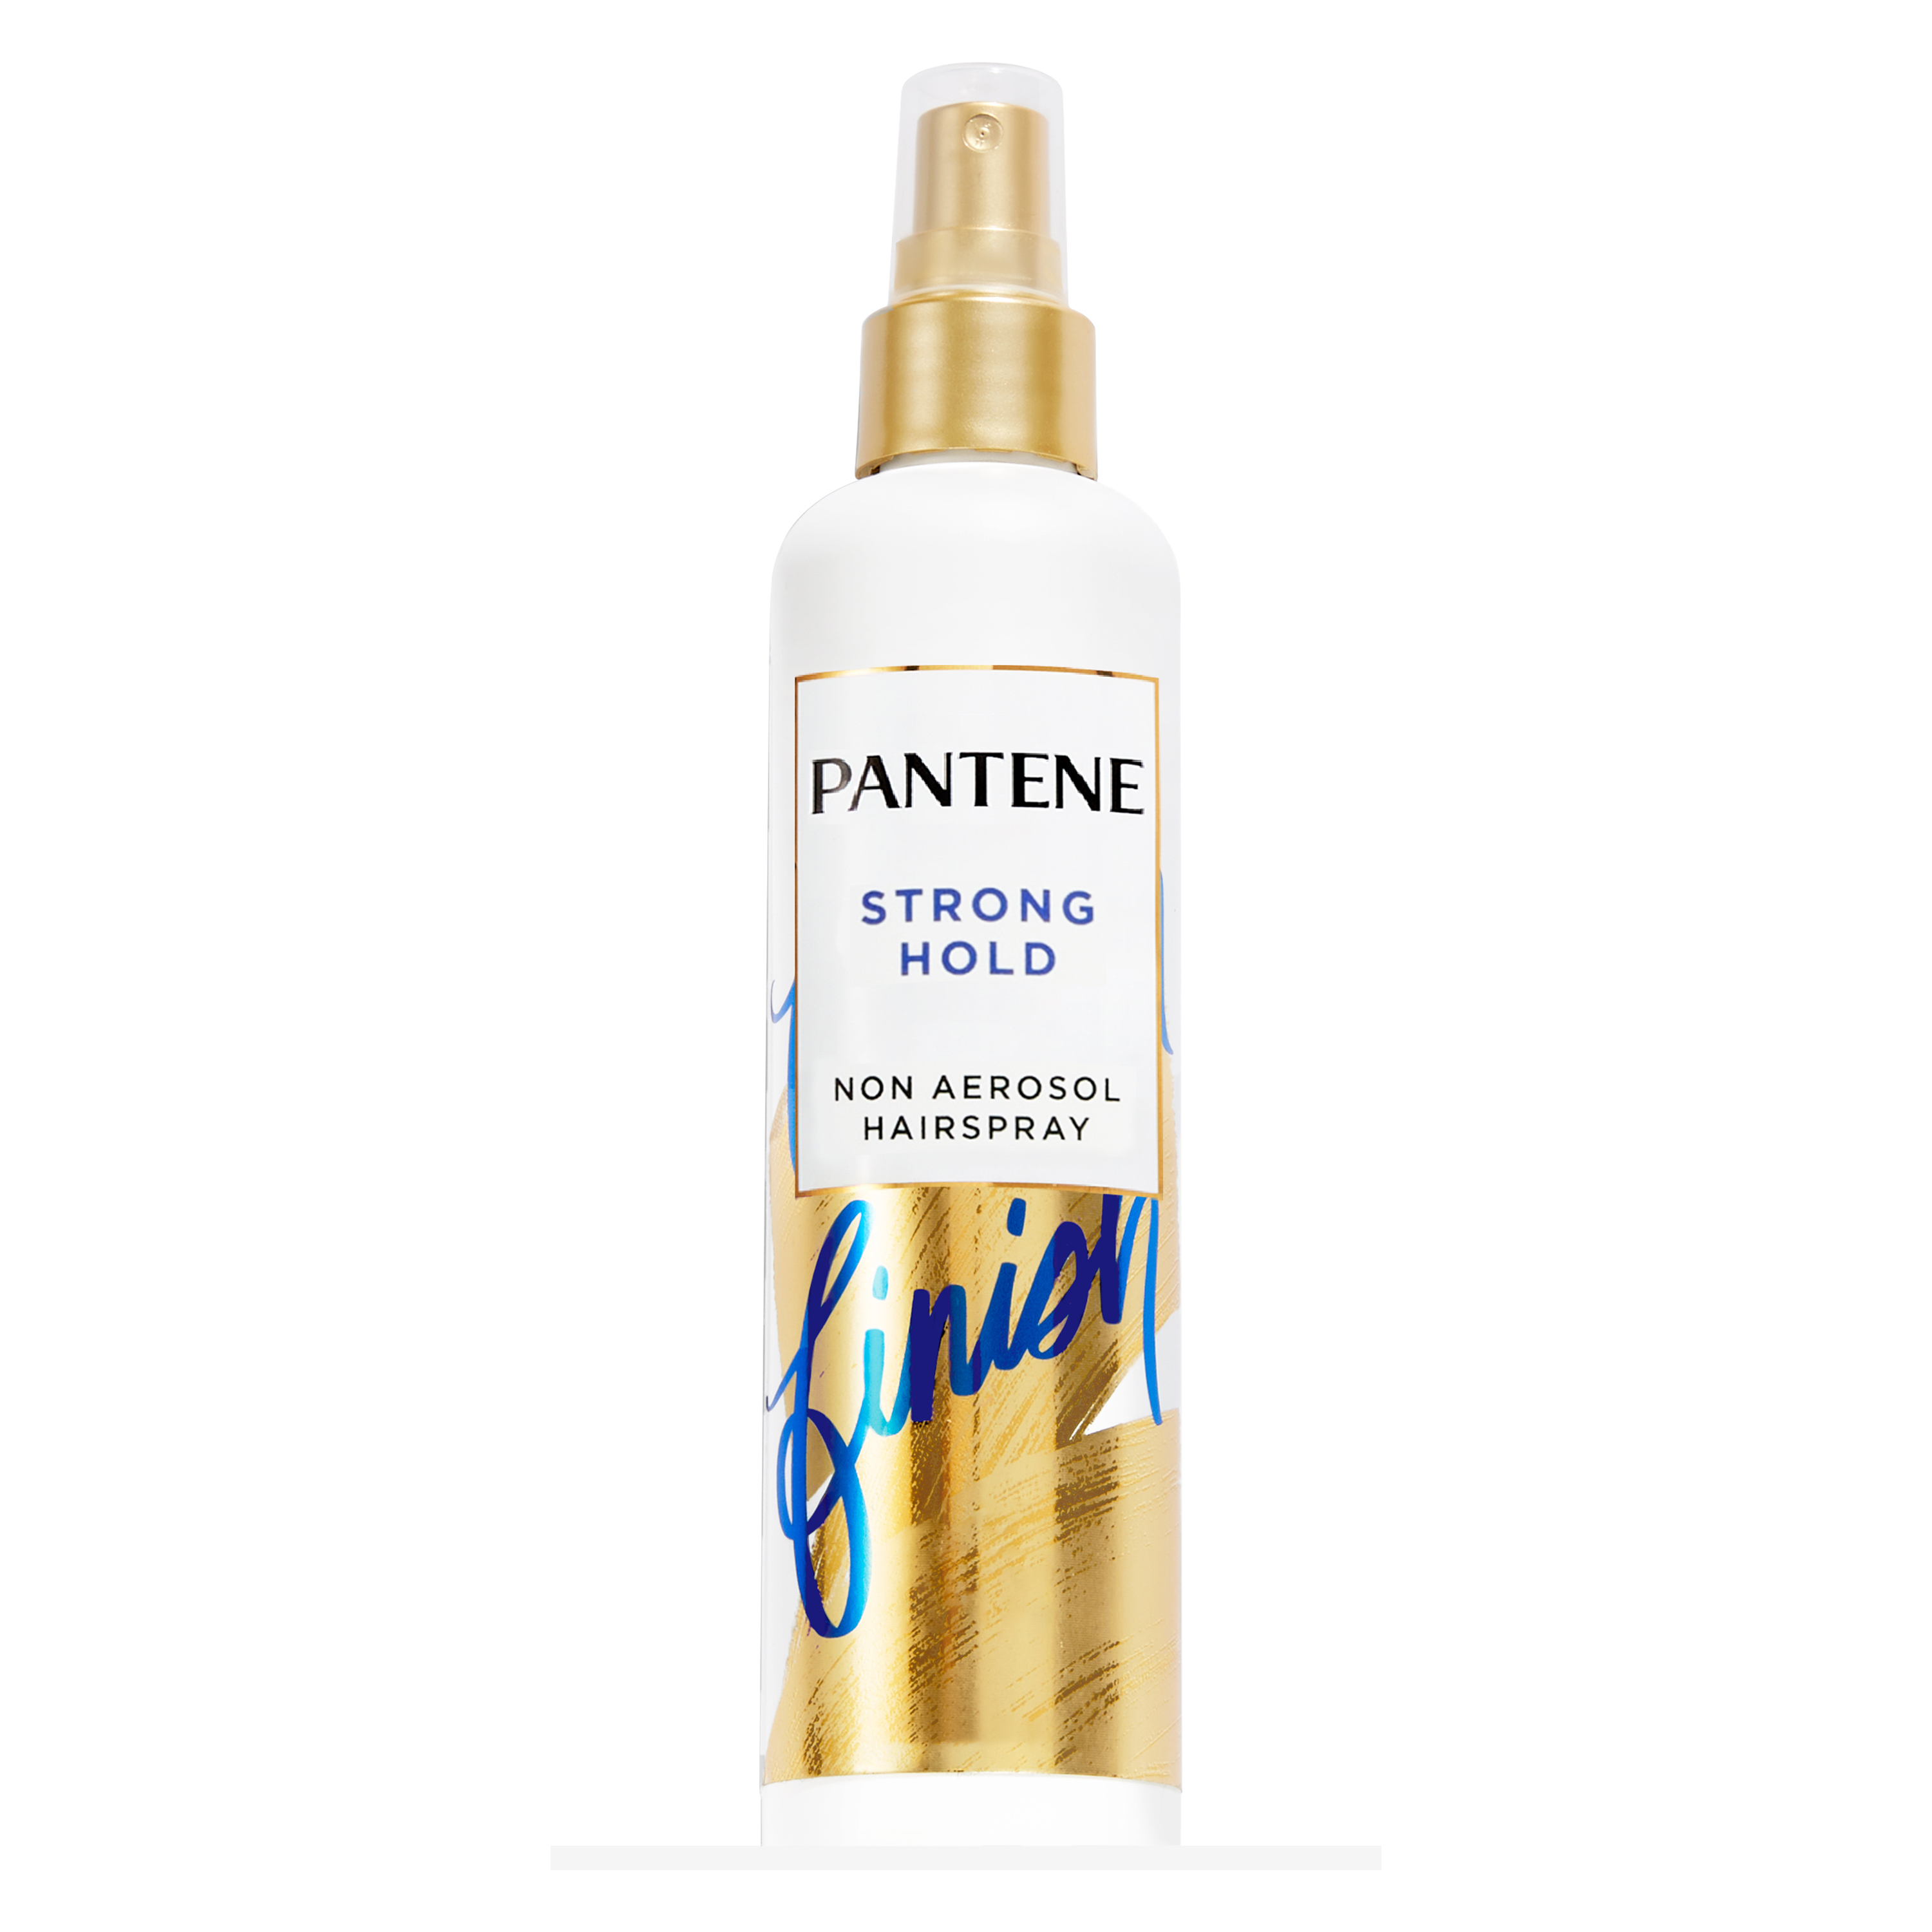 Pantene Pro-V Non-Aerosol Hairspray, Extra Strong Hold, Unisex 8.5 oz - image 1 of 8